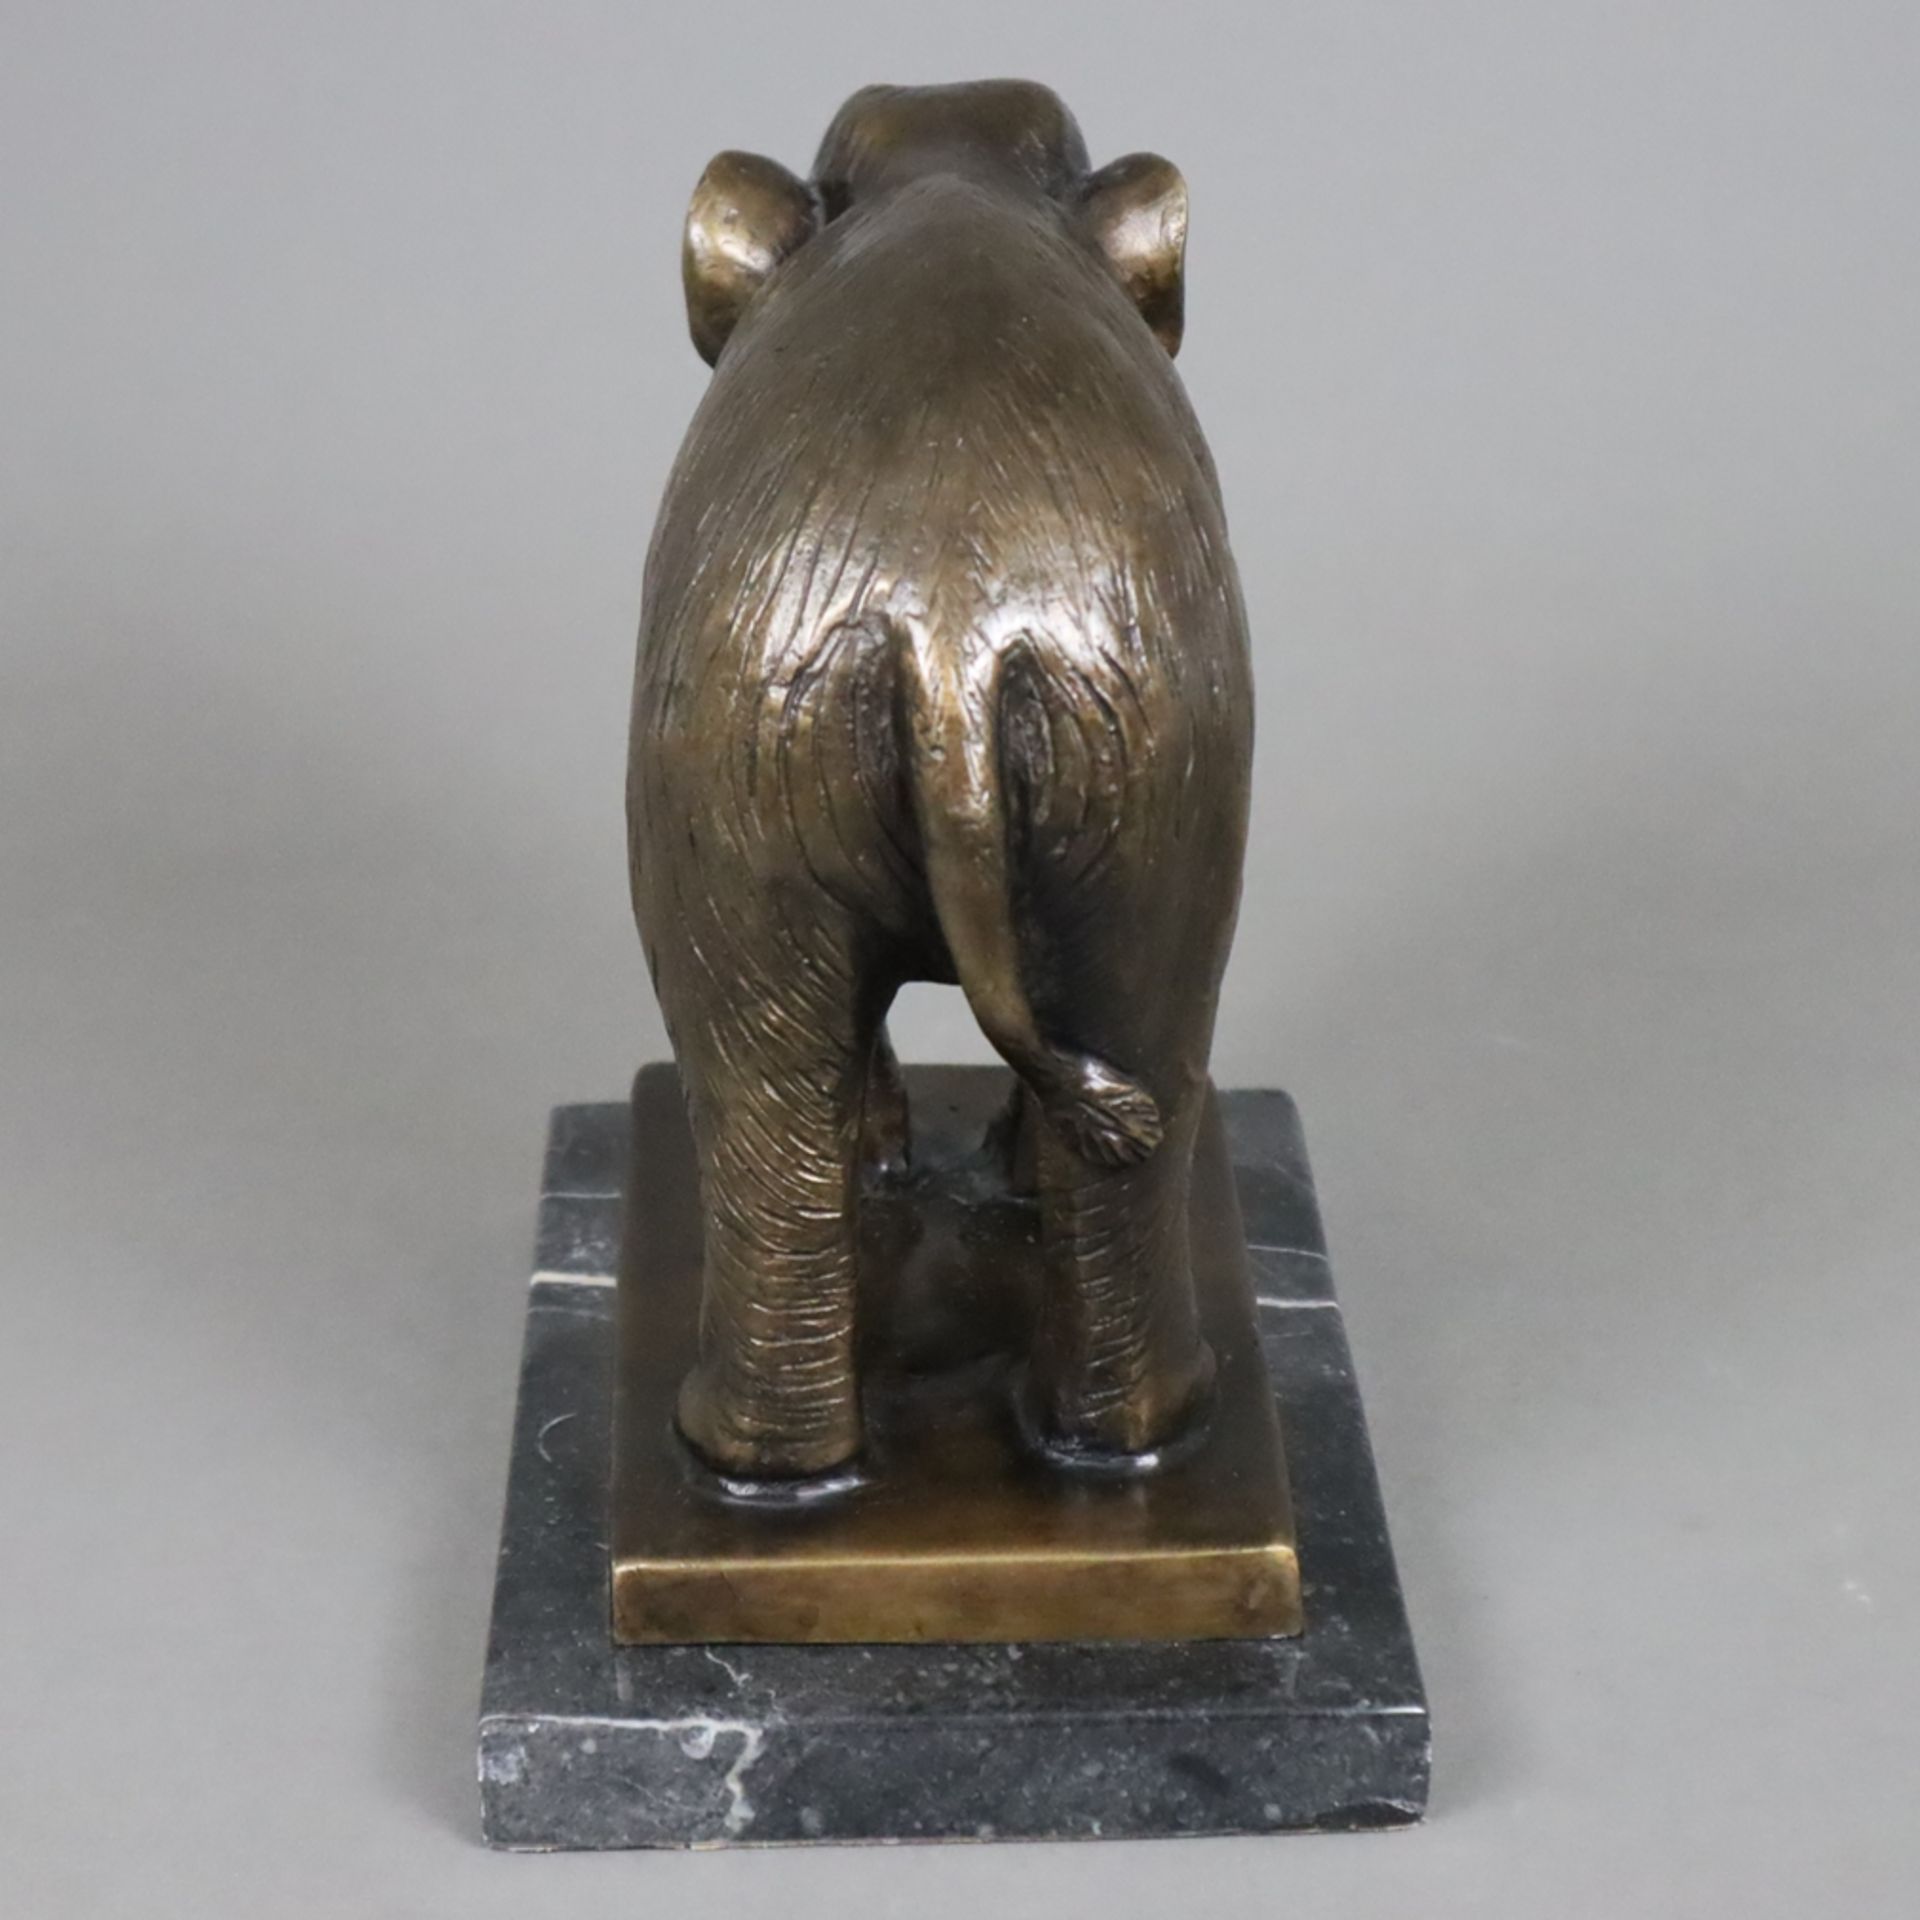 Tierfigur "Stehender Elefant" - Bronze, braun patiniert, naturalistische Darstellung auf rechteckig - Bild 4 aus 6